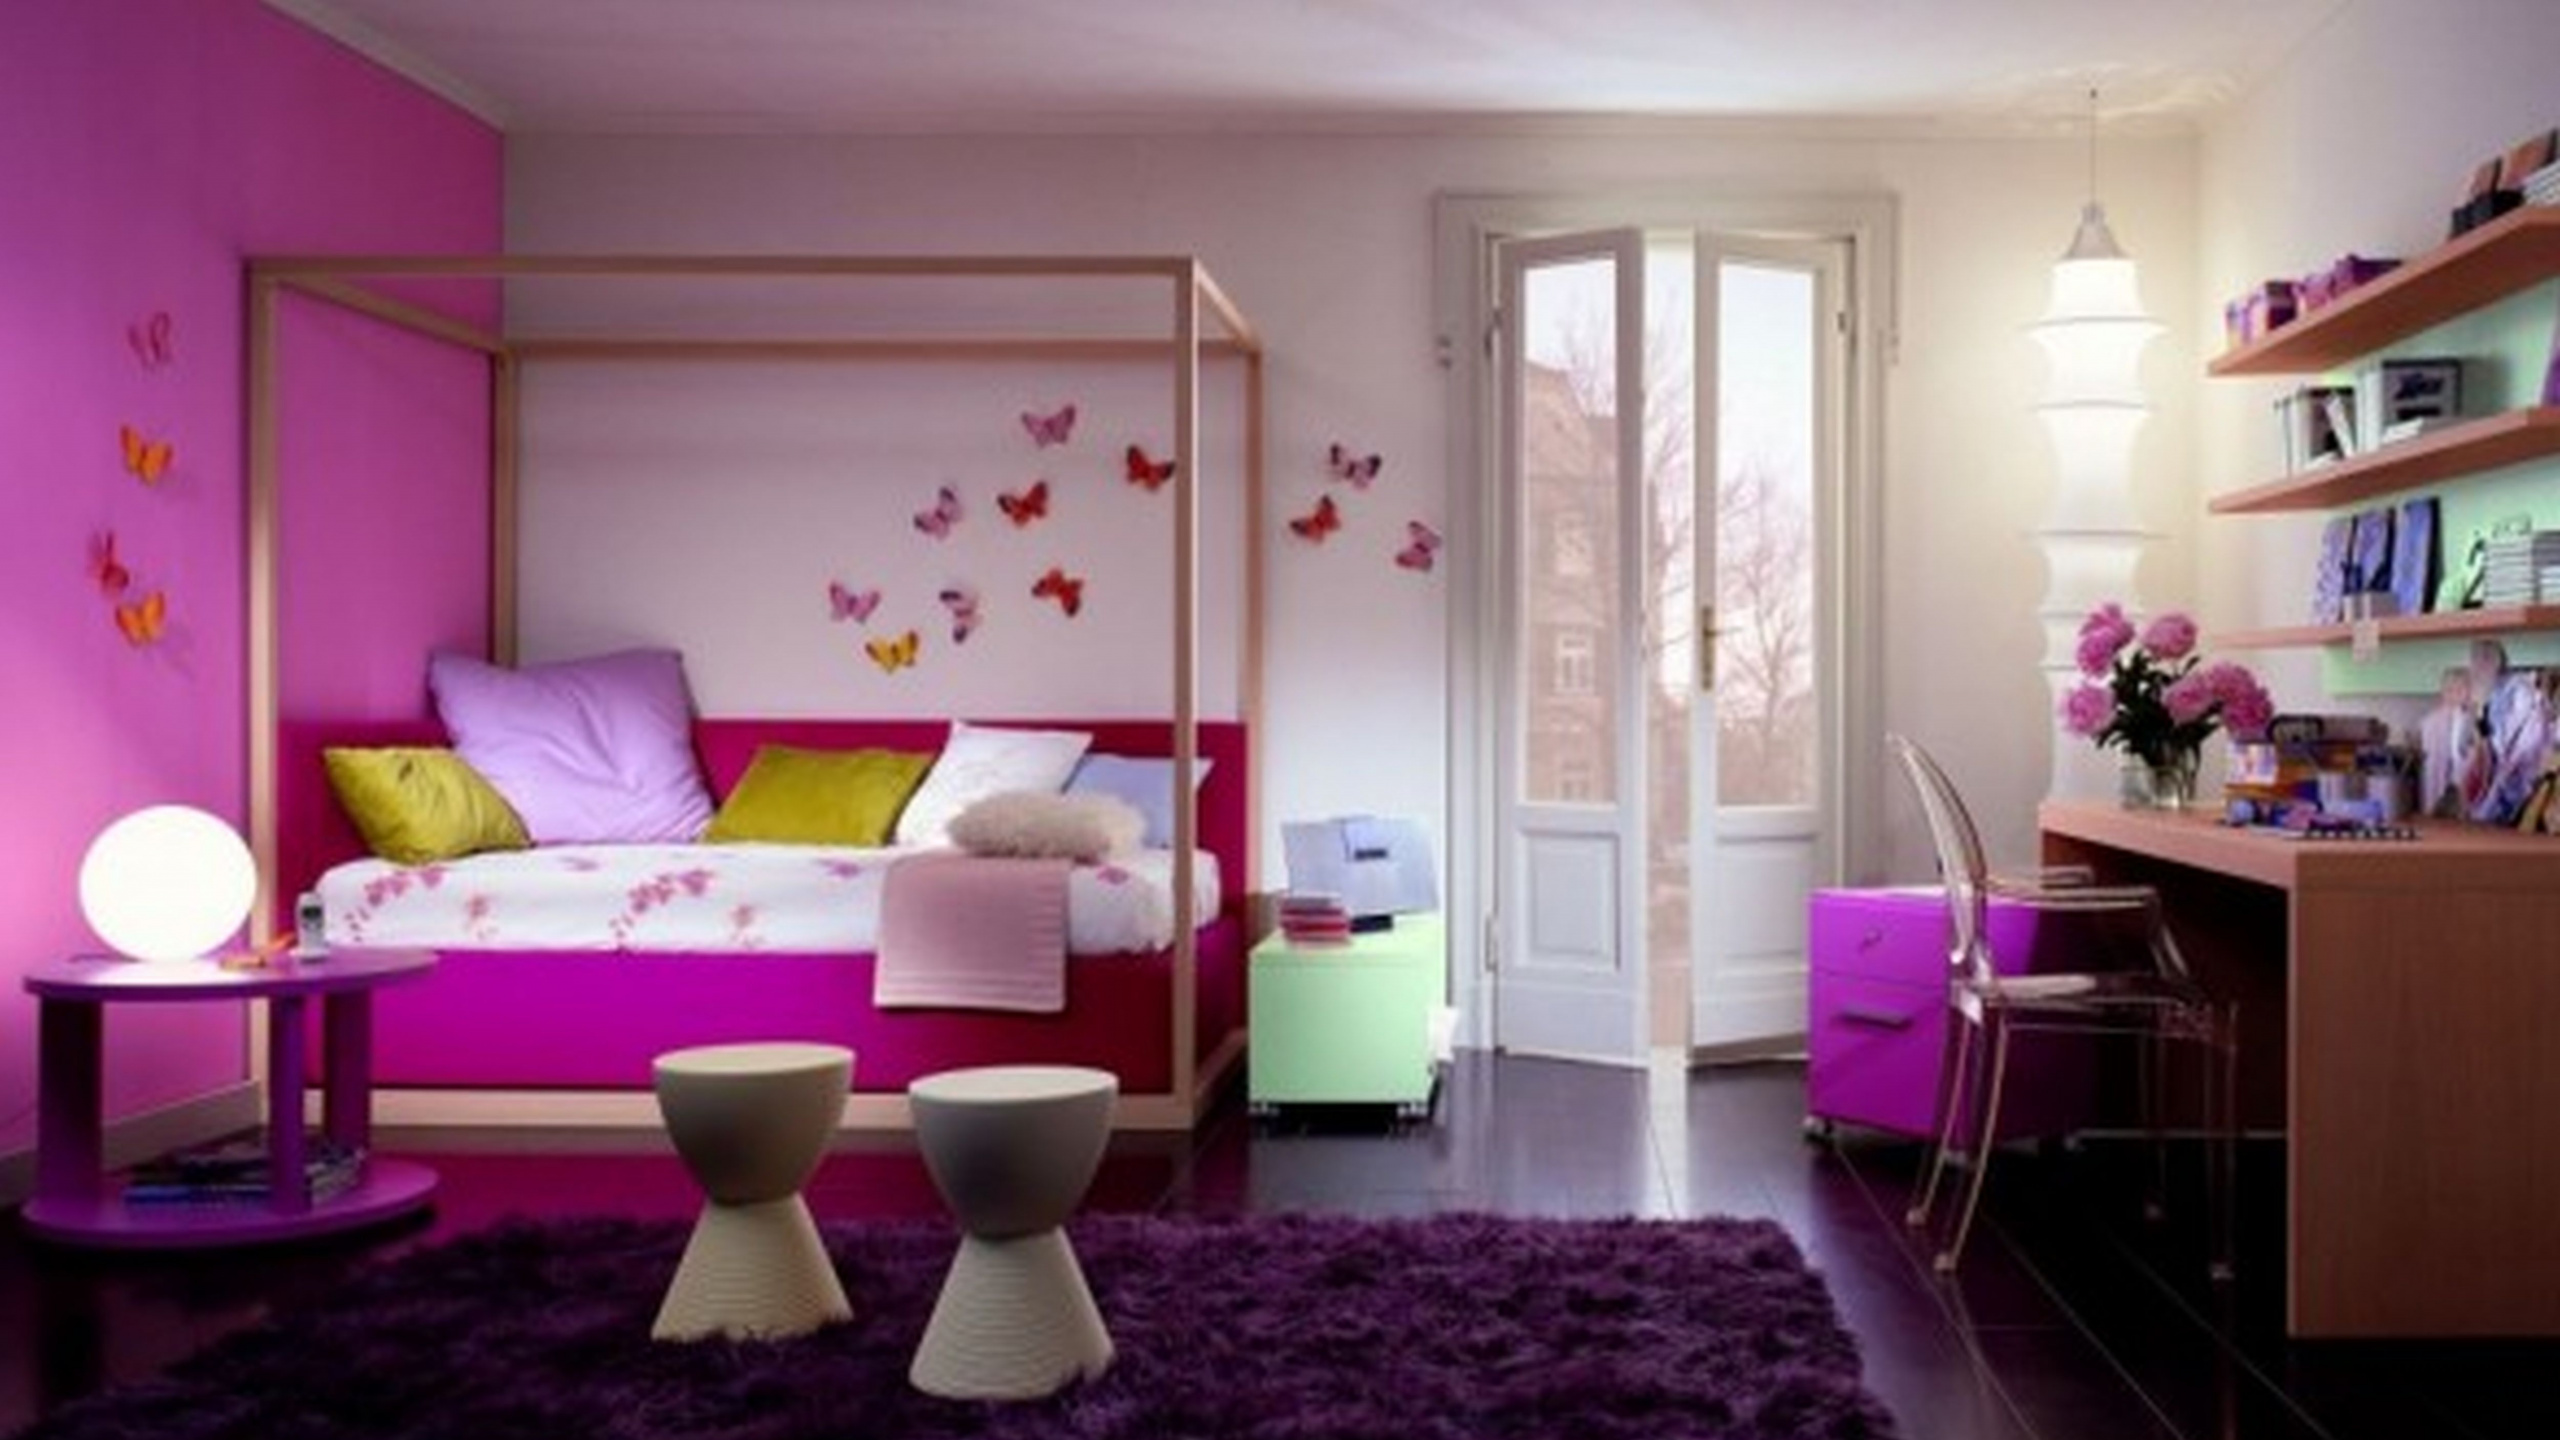 Coucher, Chambre, Conception, Mobilier, Design D'intérieur. Wallpaper in 2560x1440 Resolution